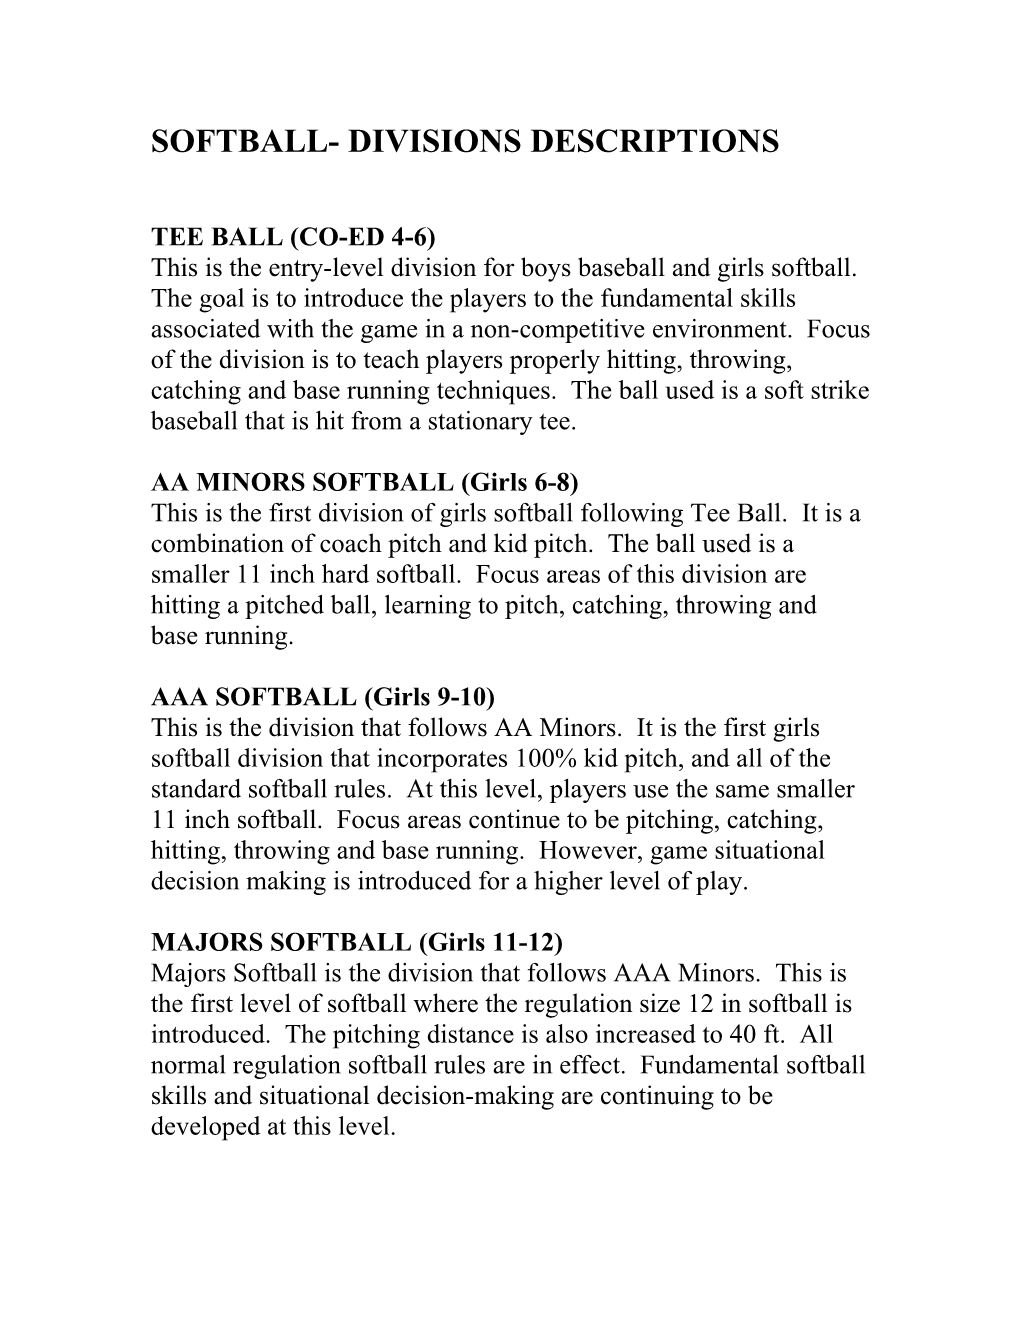 Softball- Divisions Descriptions